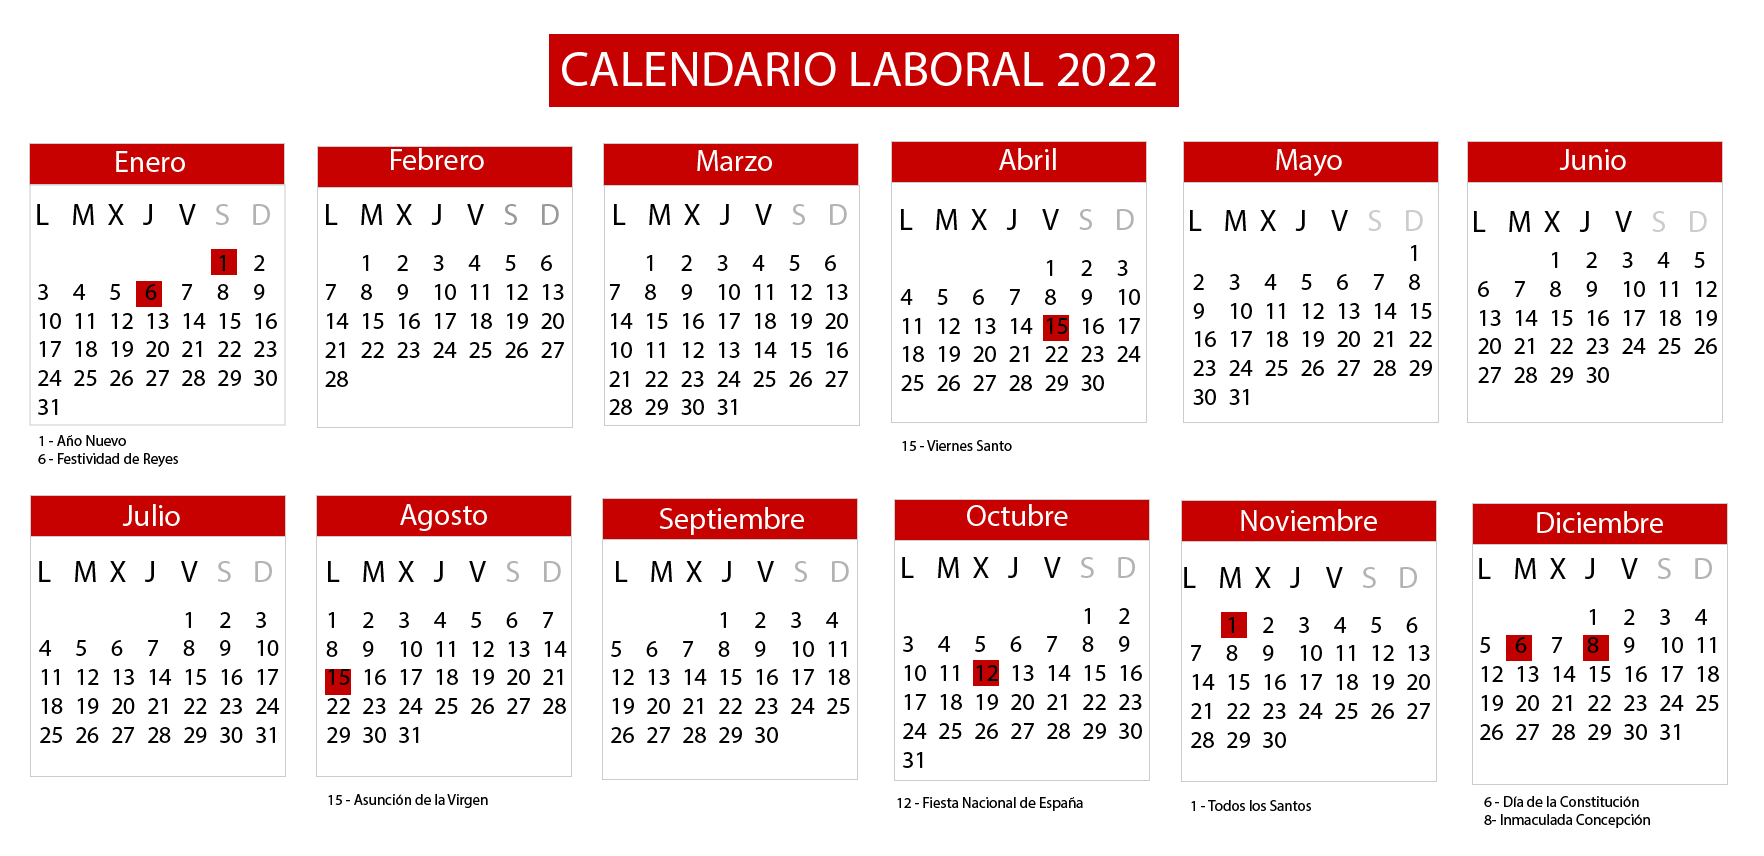 Calendario laboral 2022: consulta los días festivos del próximo año